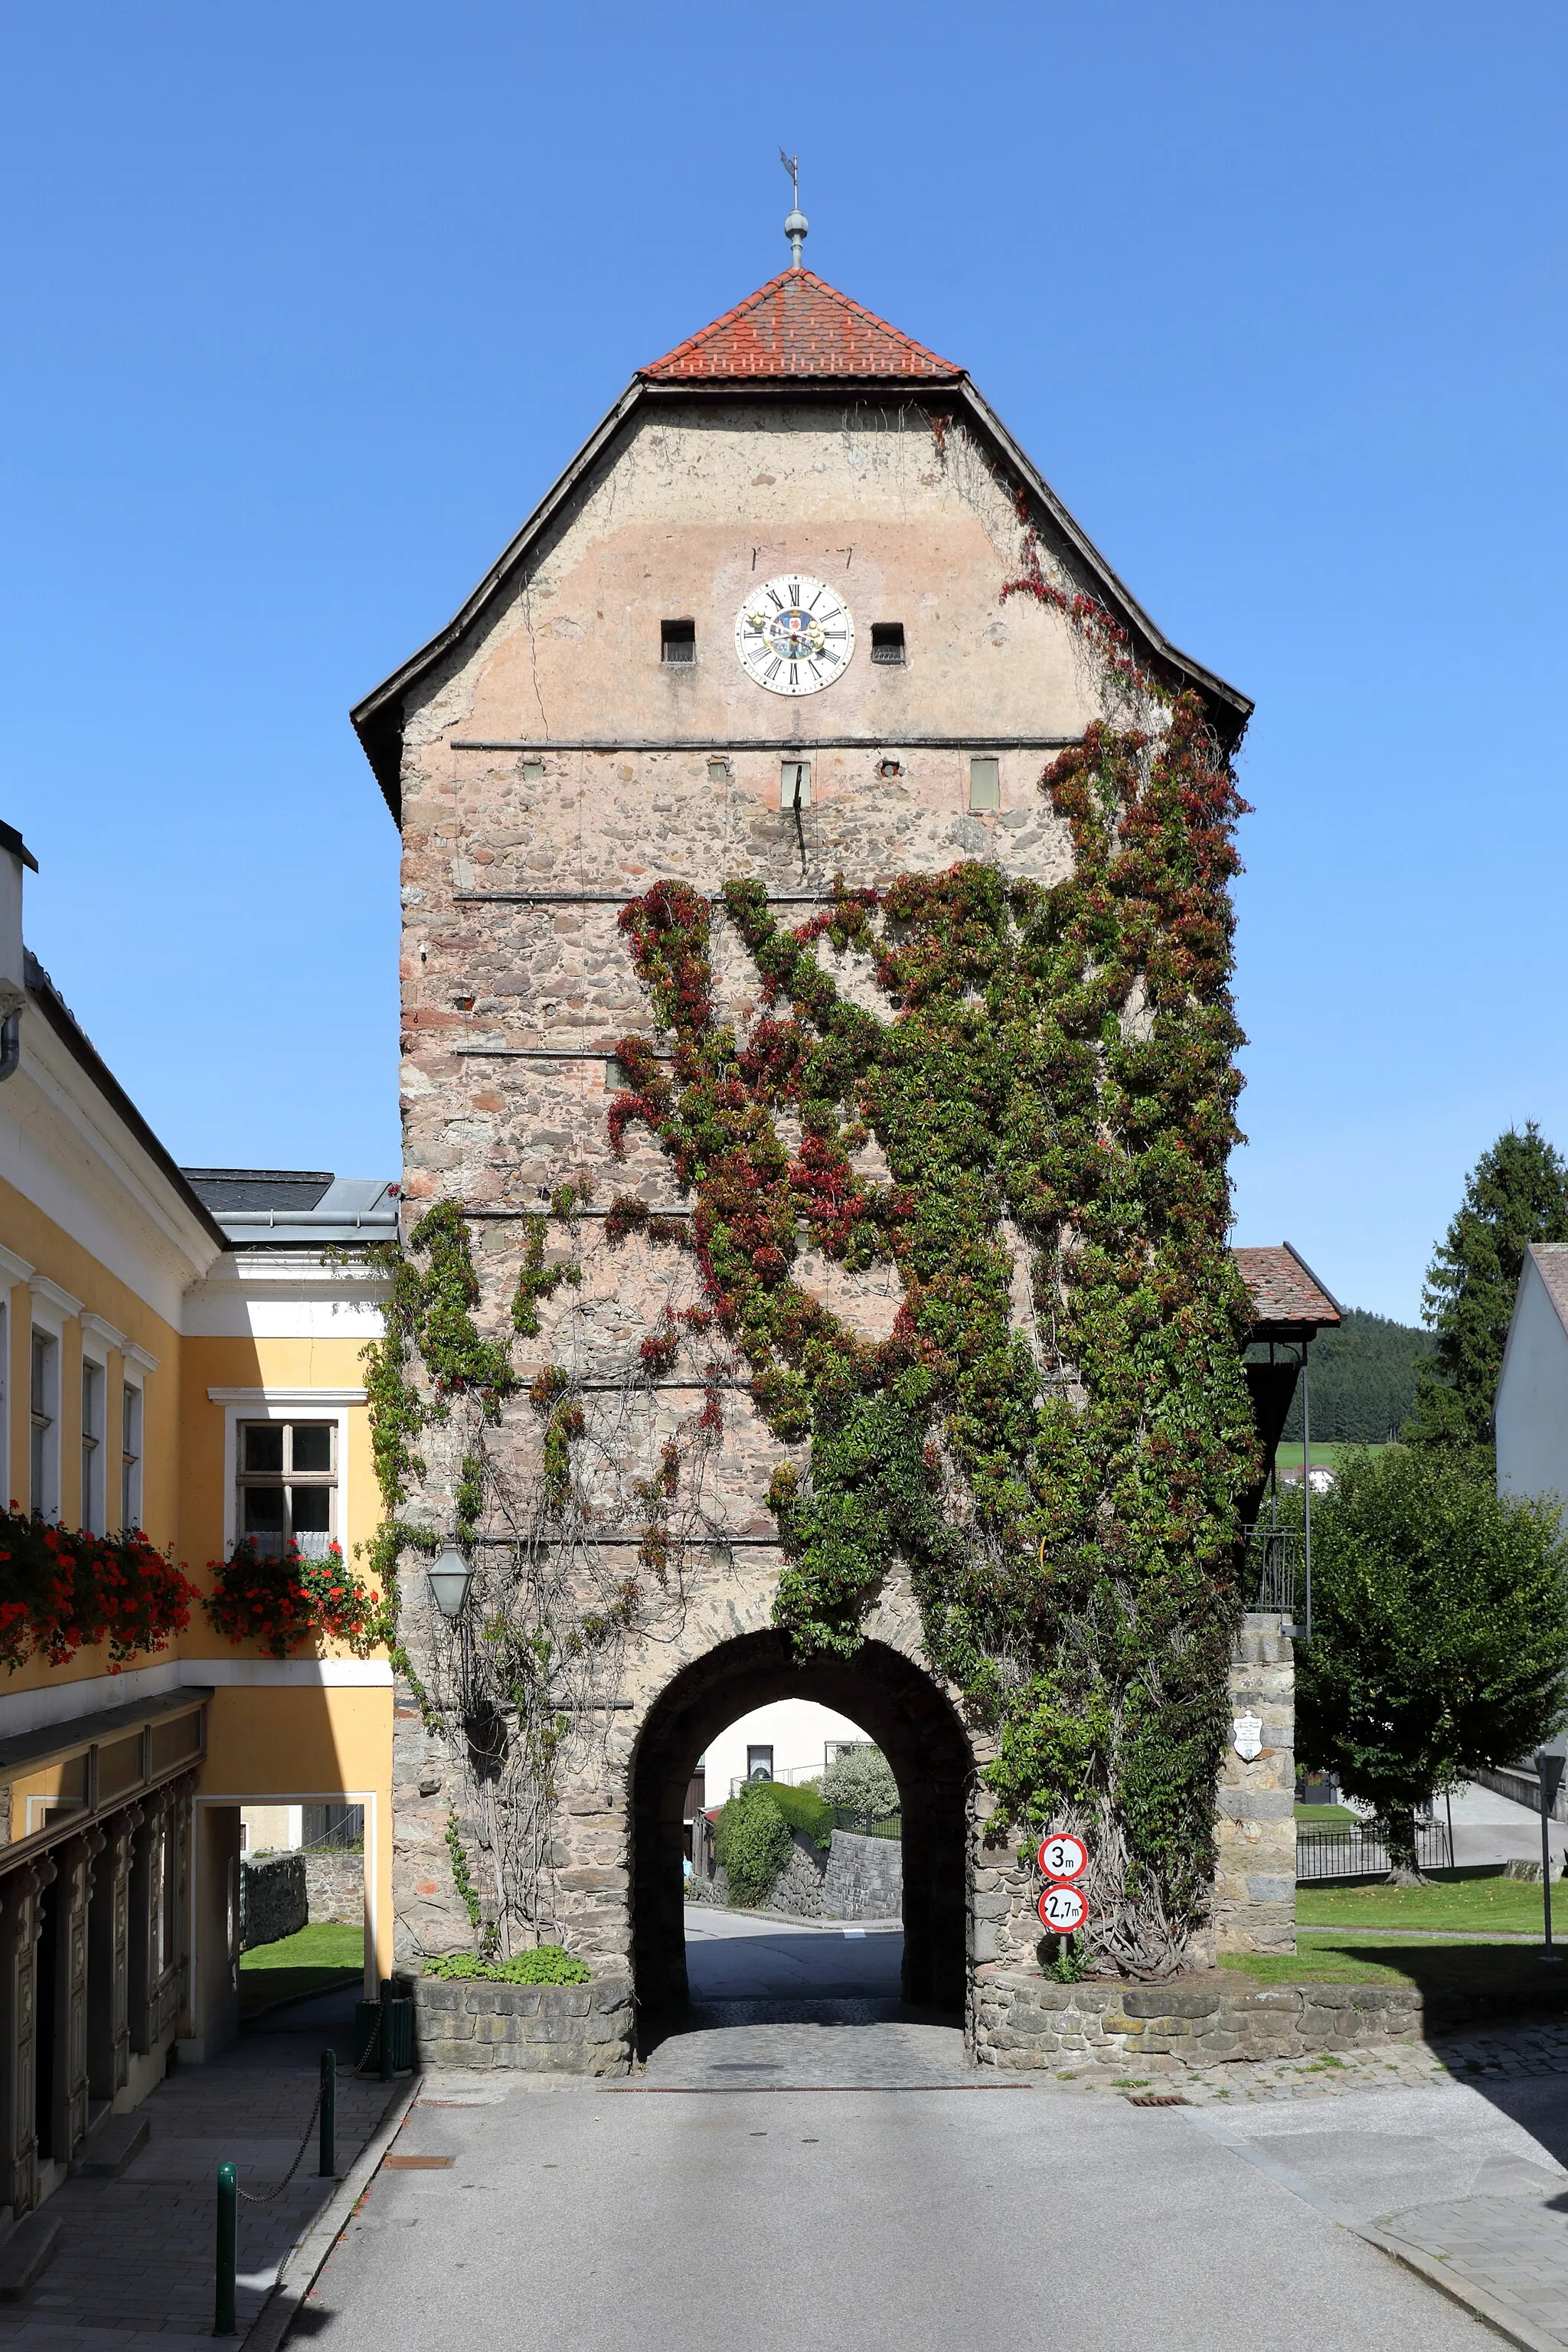 Photo showing: Der Untere Torturm bzw. "Alter Turm" in der oberösterreichischen Marktgemeinde Haslach an der Mühl. Der Untere Torturm stellte den ehemaligen nordwestlichen Zugang zum Markt dar. Er wurde von 1483 bis 1487 als Teil der annähernd rechteckige Wehranlage um den Markt Haslach errichtet. Seit 1927 dient er der Marktgemeinde als Heimathaus.